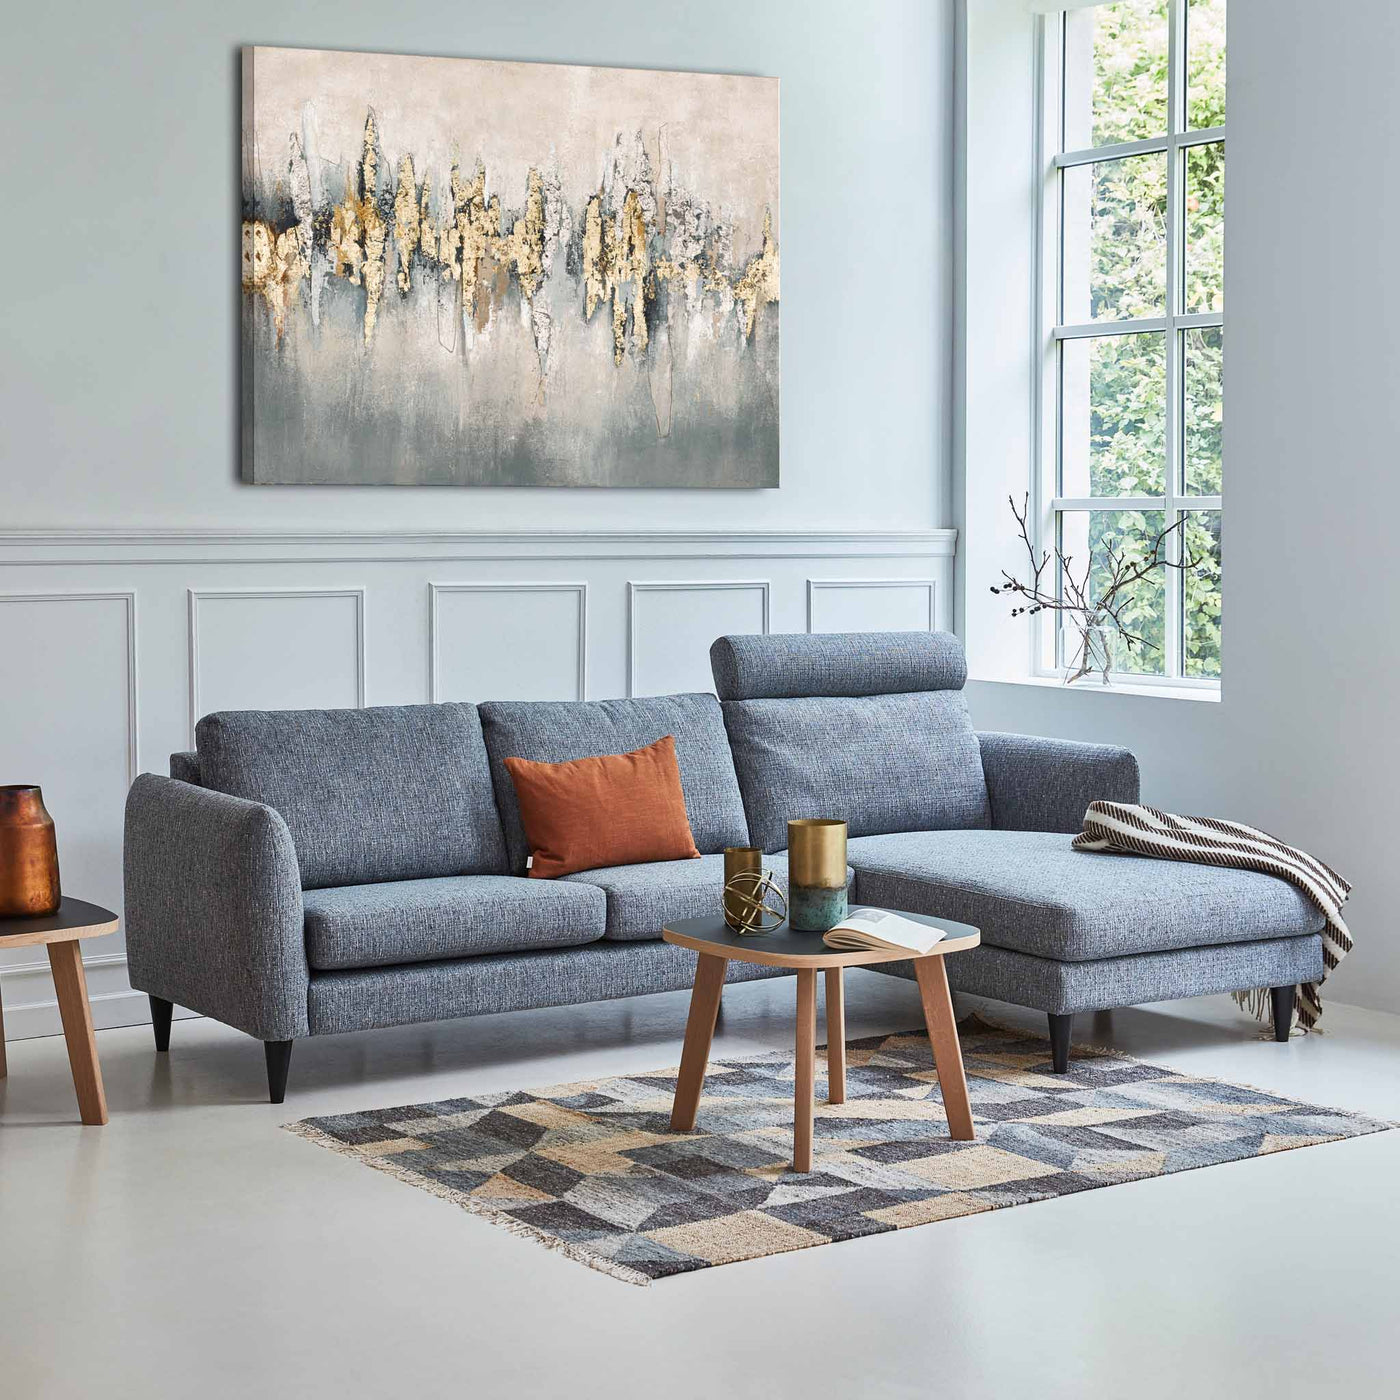 Skyline chaiselong sofa i gråblå stof fra Hjort Knudsen